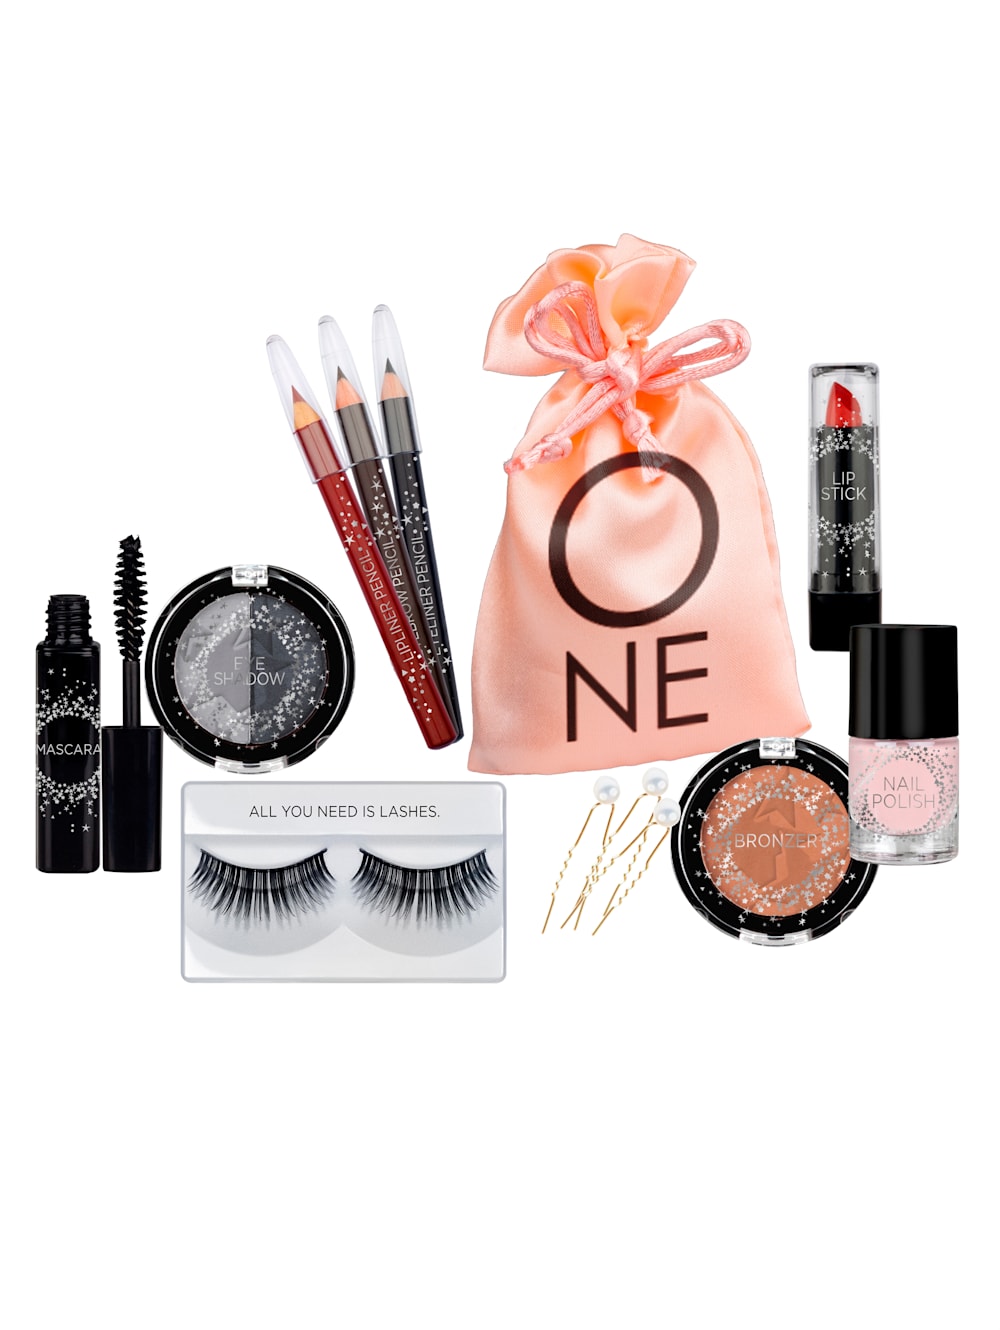 KTN Dr. Neuberger Adventskalender Beauty Surprises - Make-up Advent Calendar  | Wenz